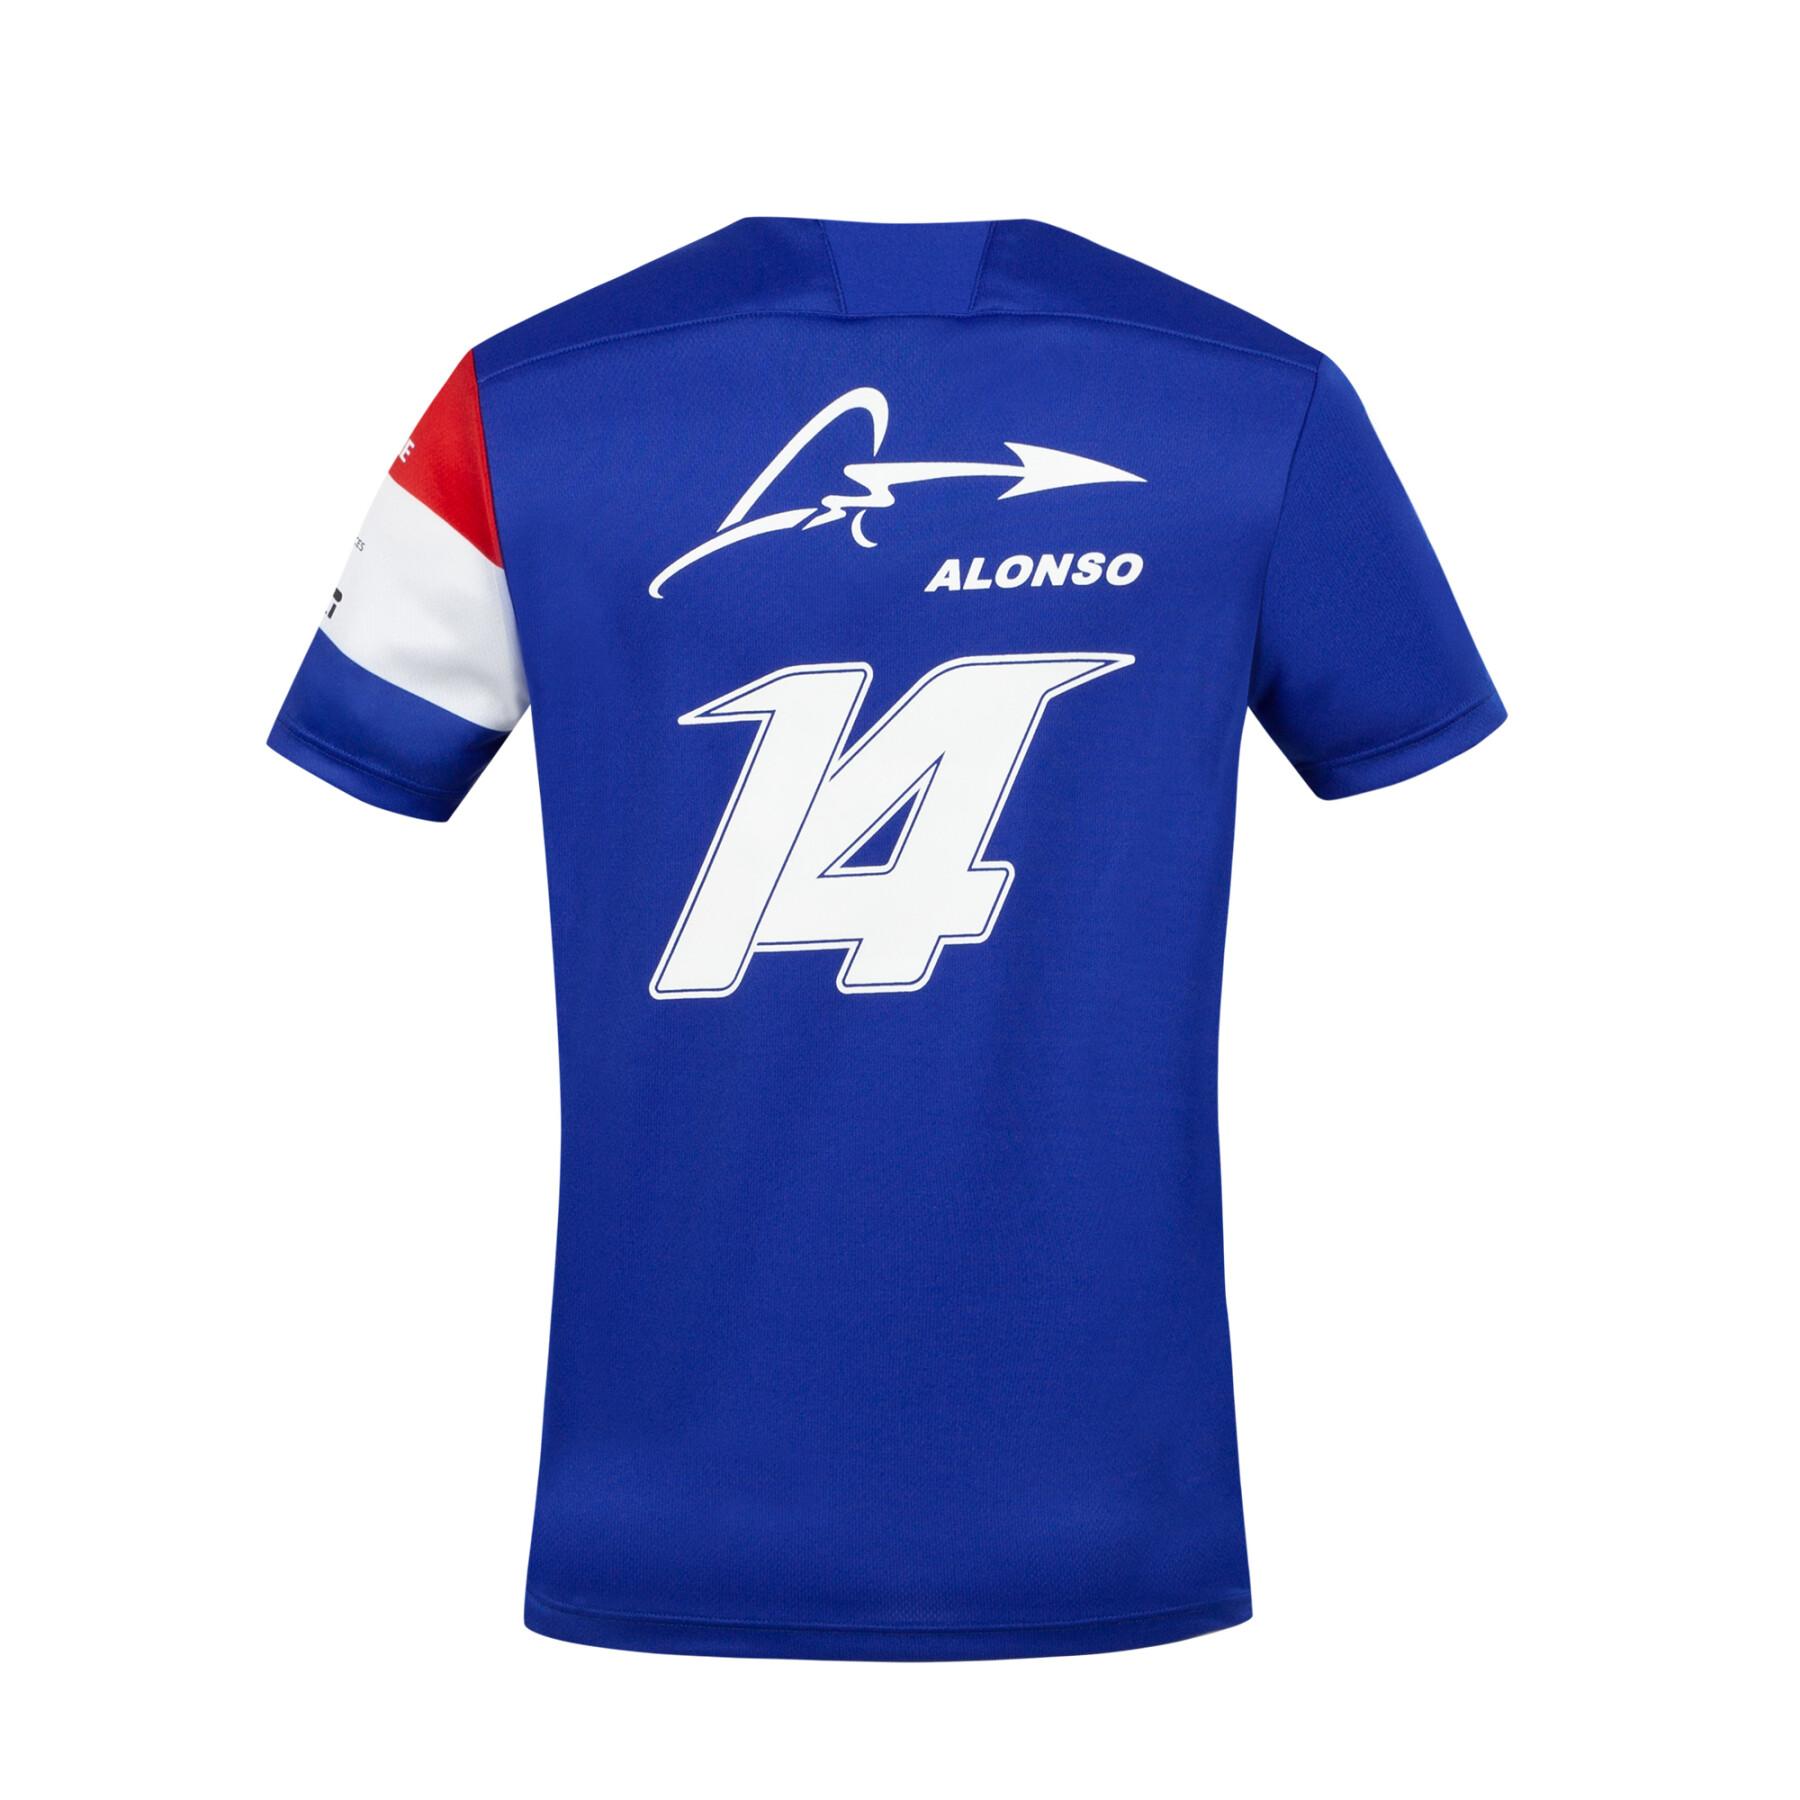 Kid's jersey Le Coq Sportif Alpine F1 2021/22